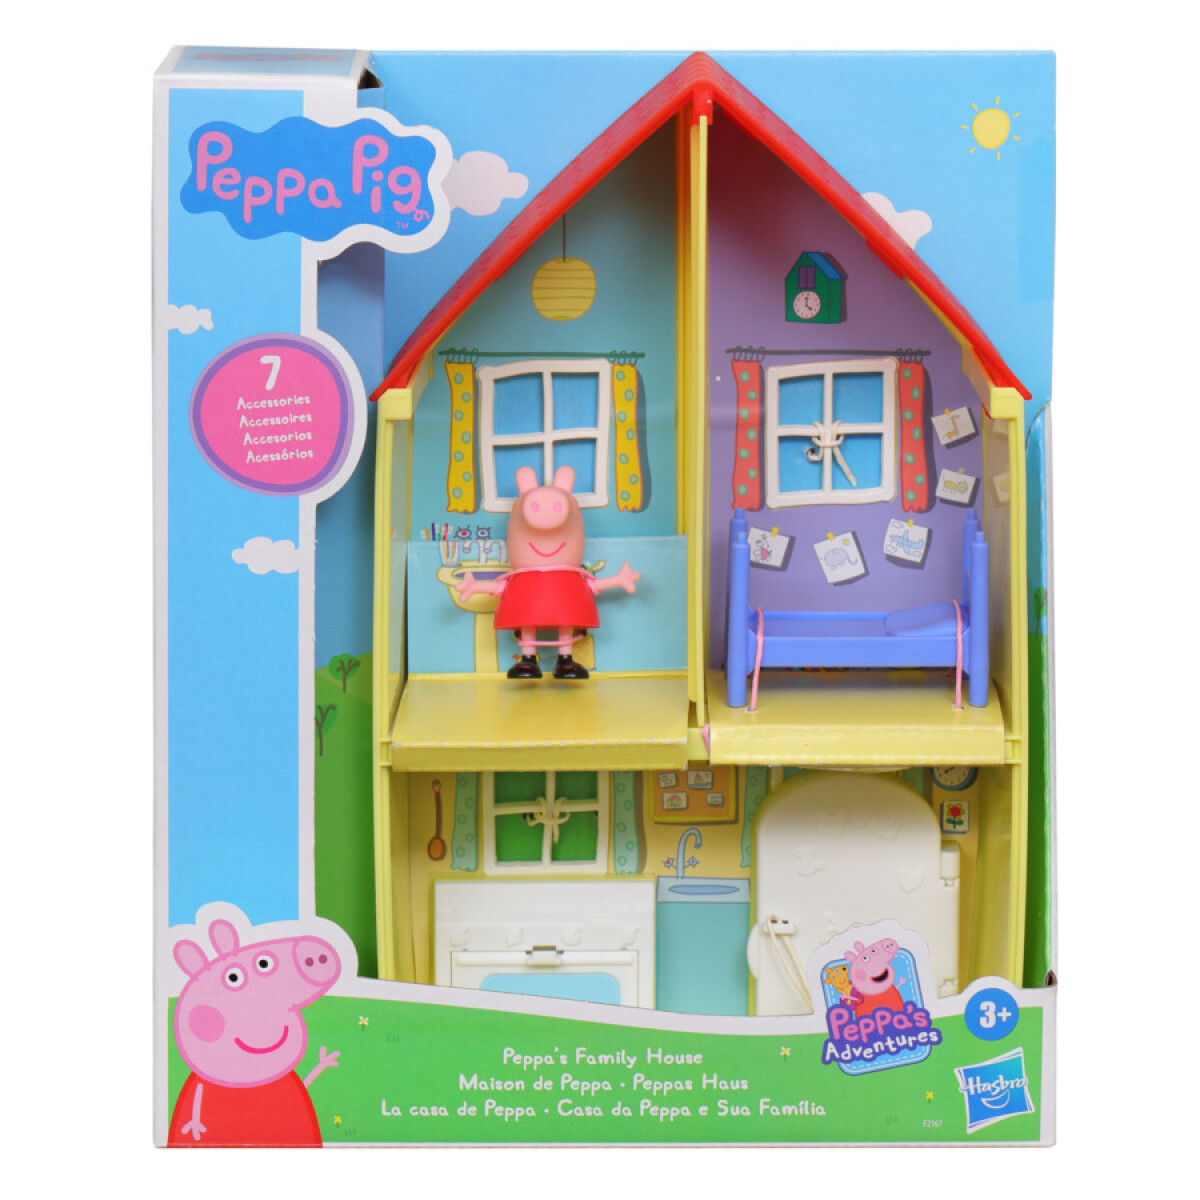 Set Figura Peppa Pig y la Casa de Peppa con Accesorios - 001 